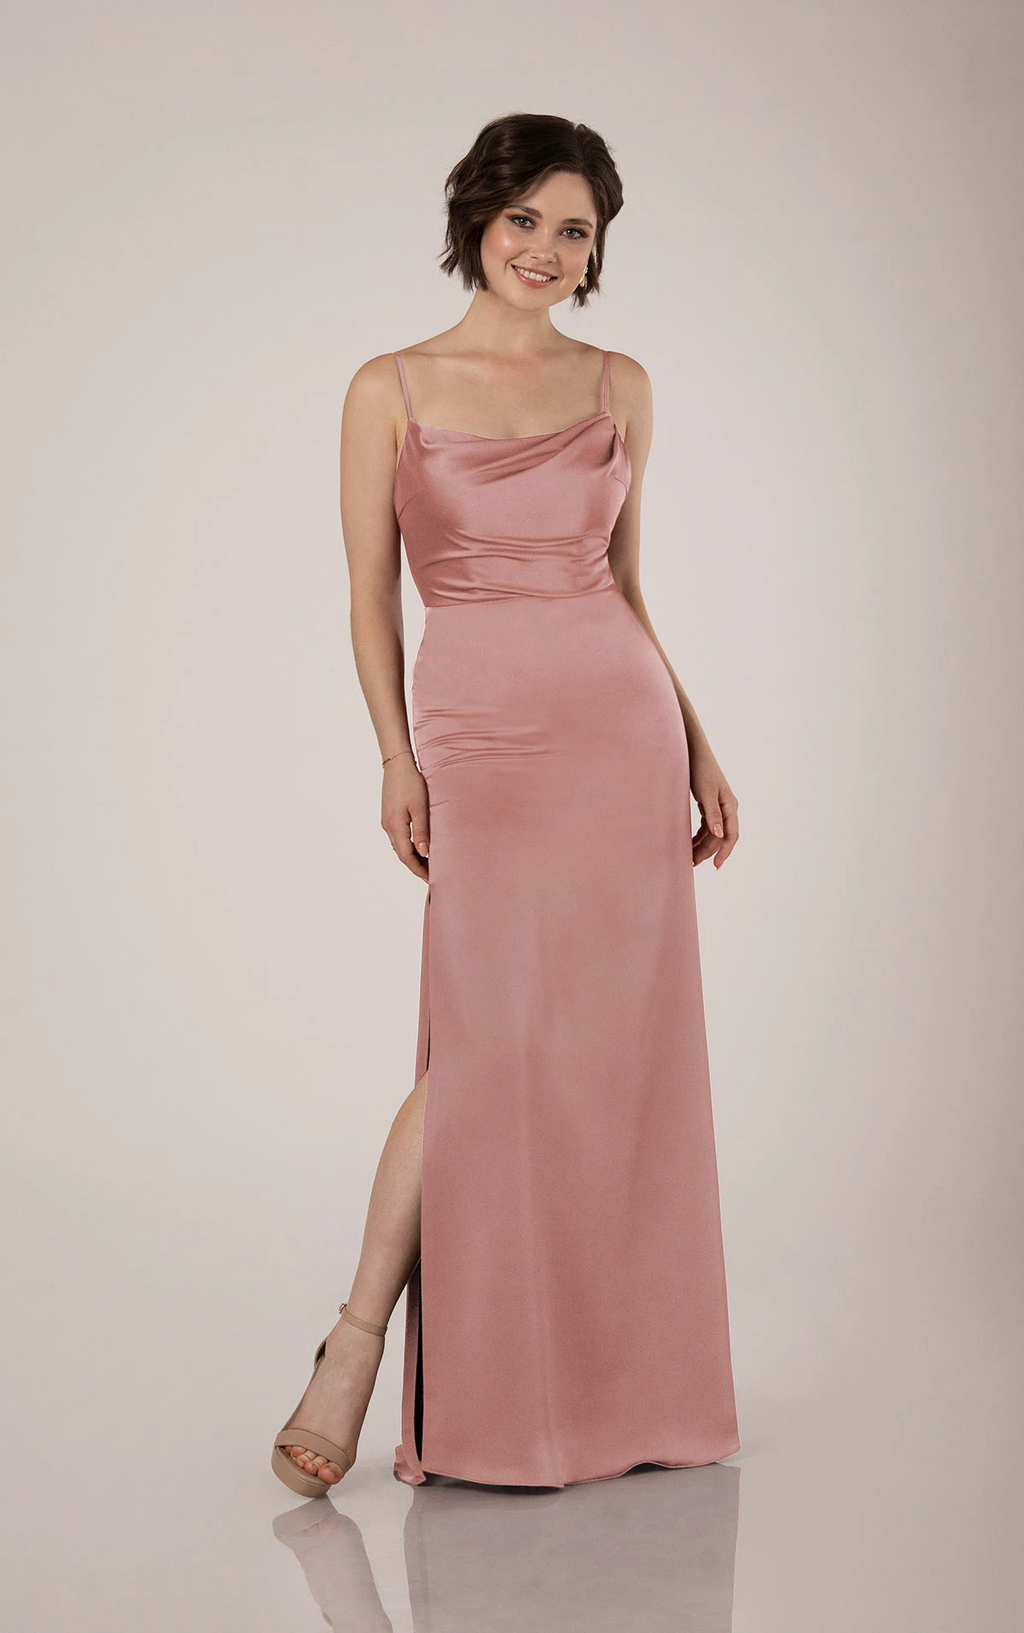 Sorella Vita Dress Style 9538 (Bellini-Size 12) Prom, Ball., Black-tie, Bridesmaid, Pageant (Copy) (Copy)